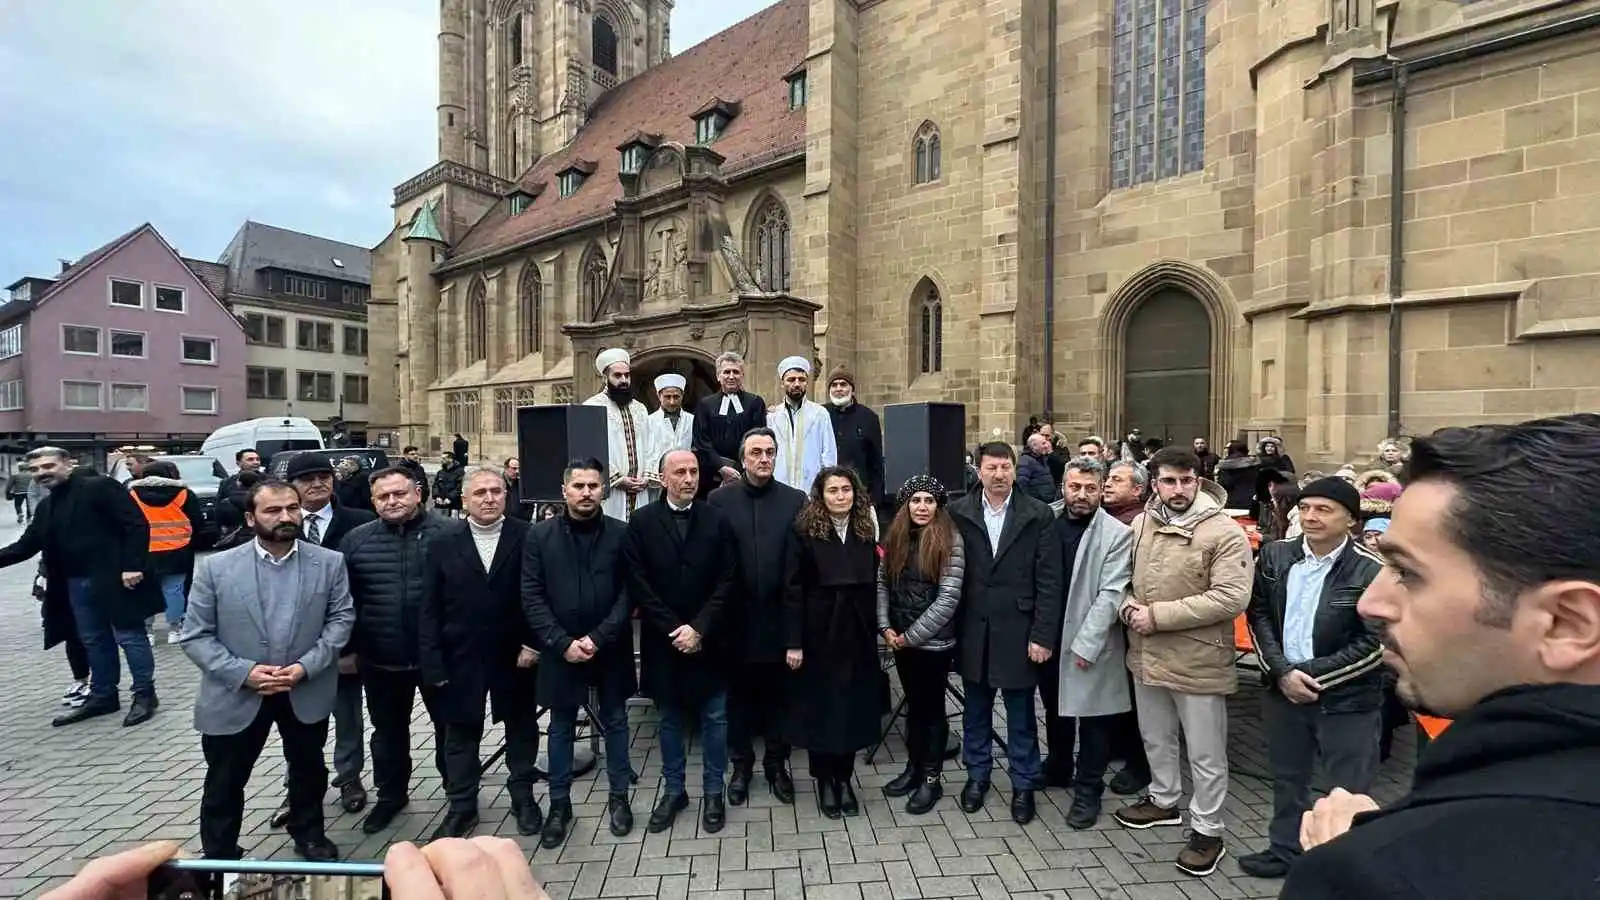 Almanya’da imamlar ve papazlar Türkiye için dua etti
